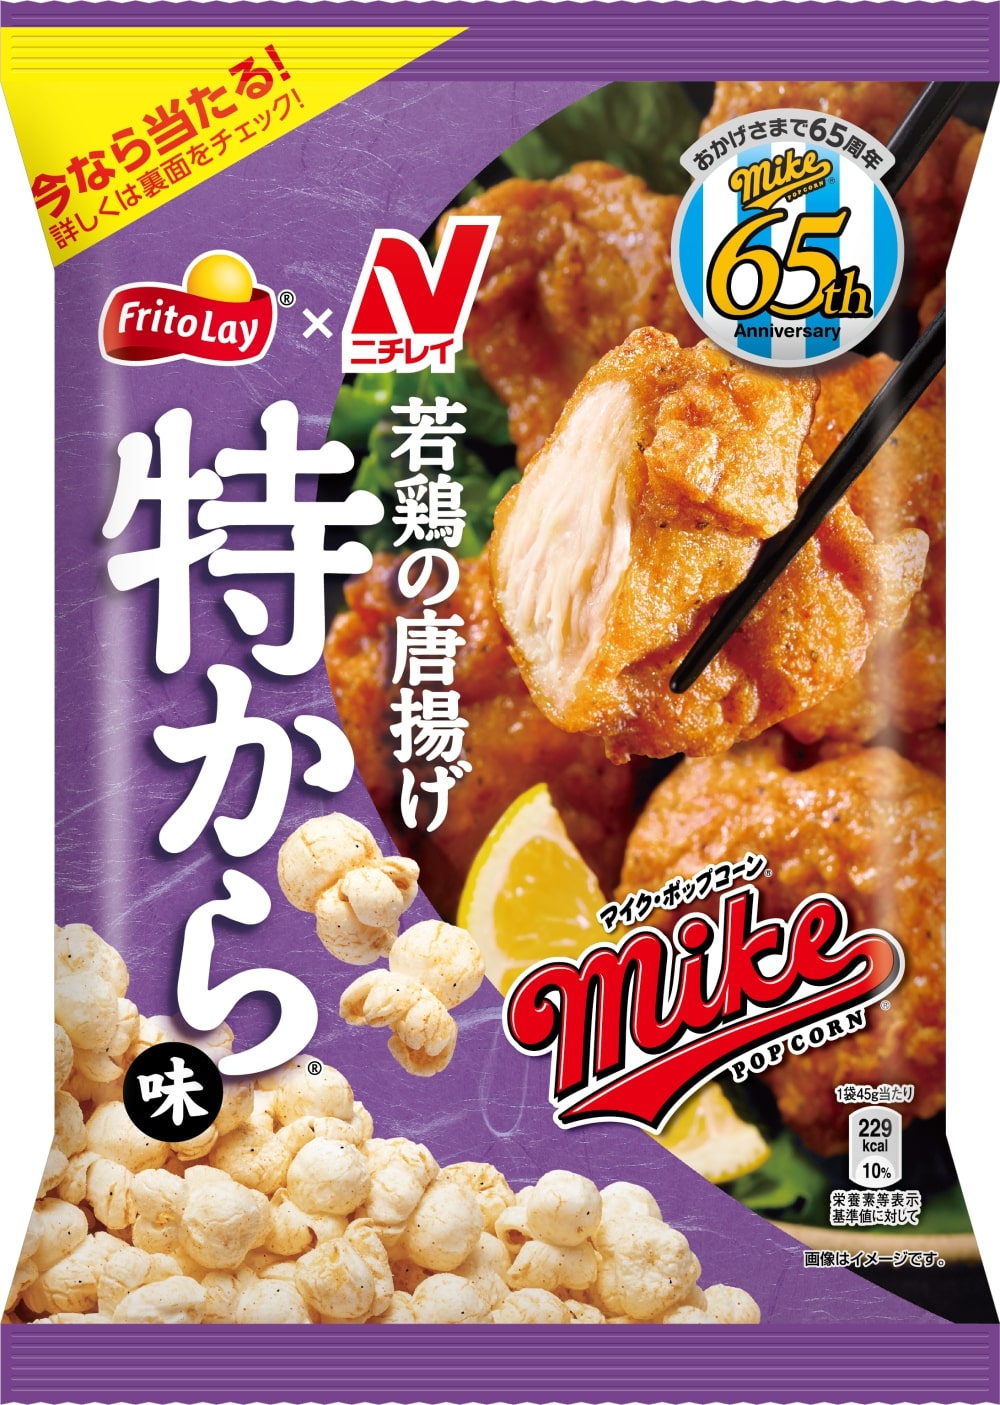 ジャパンフリトレー「マイクポップコーン 特から味」7